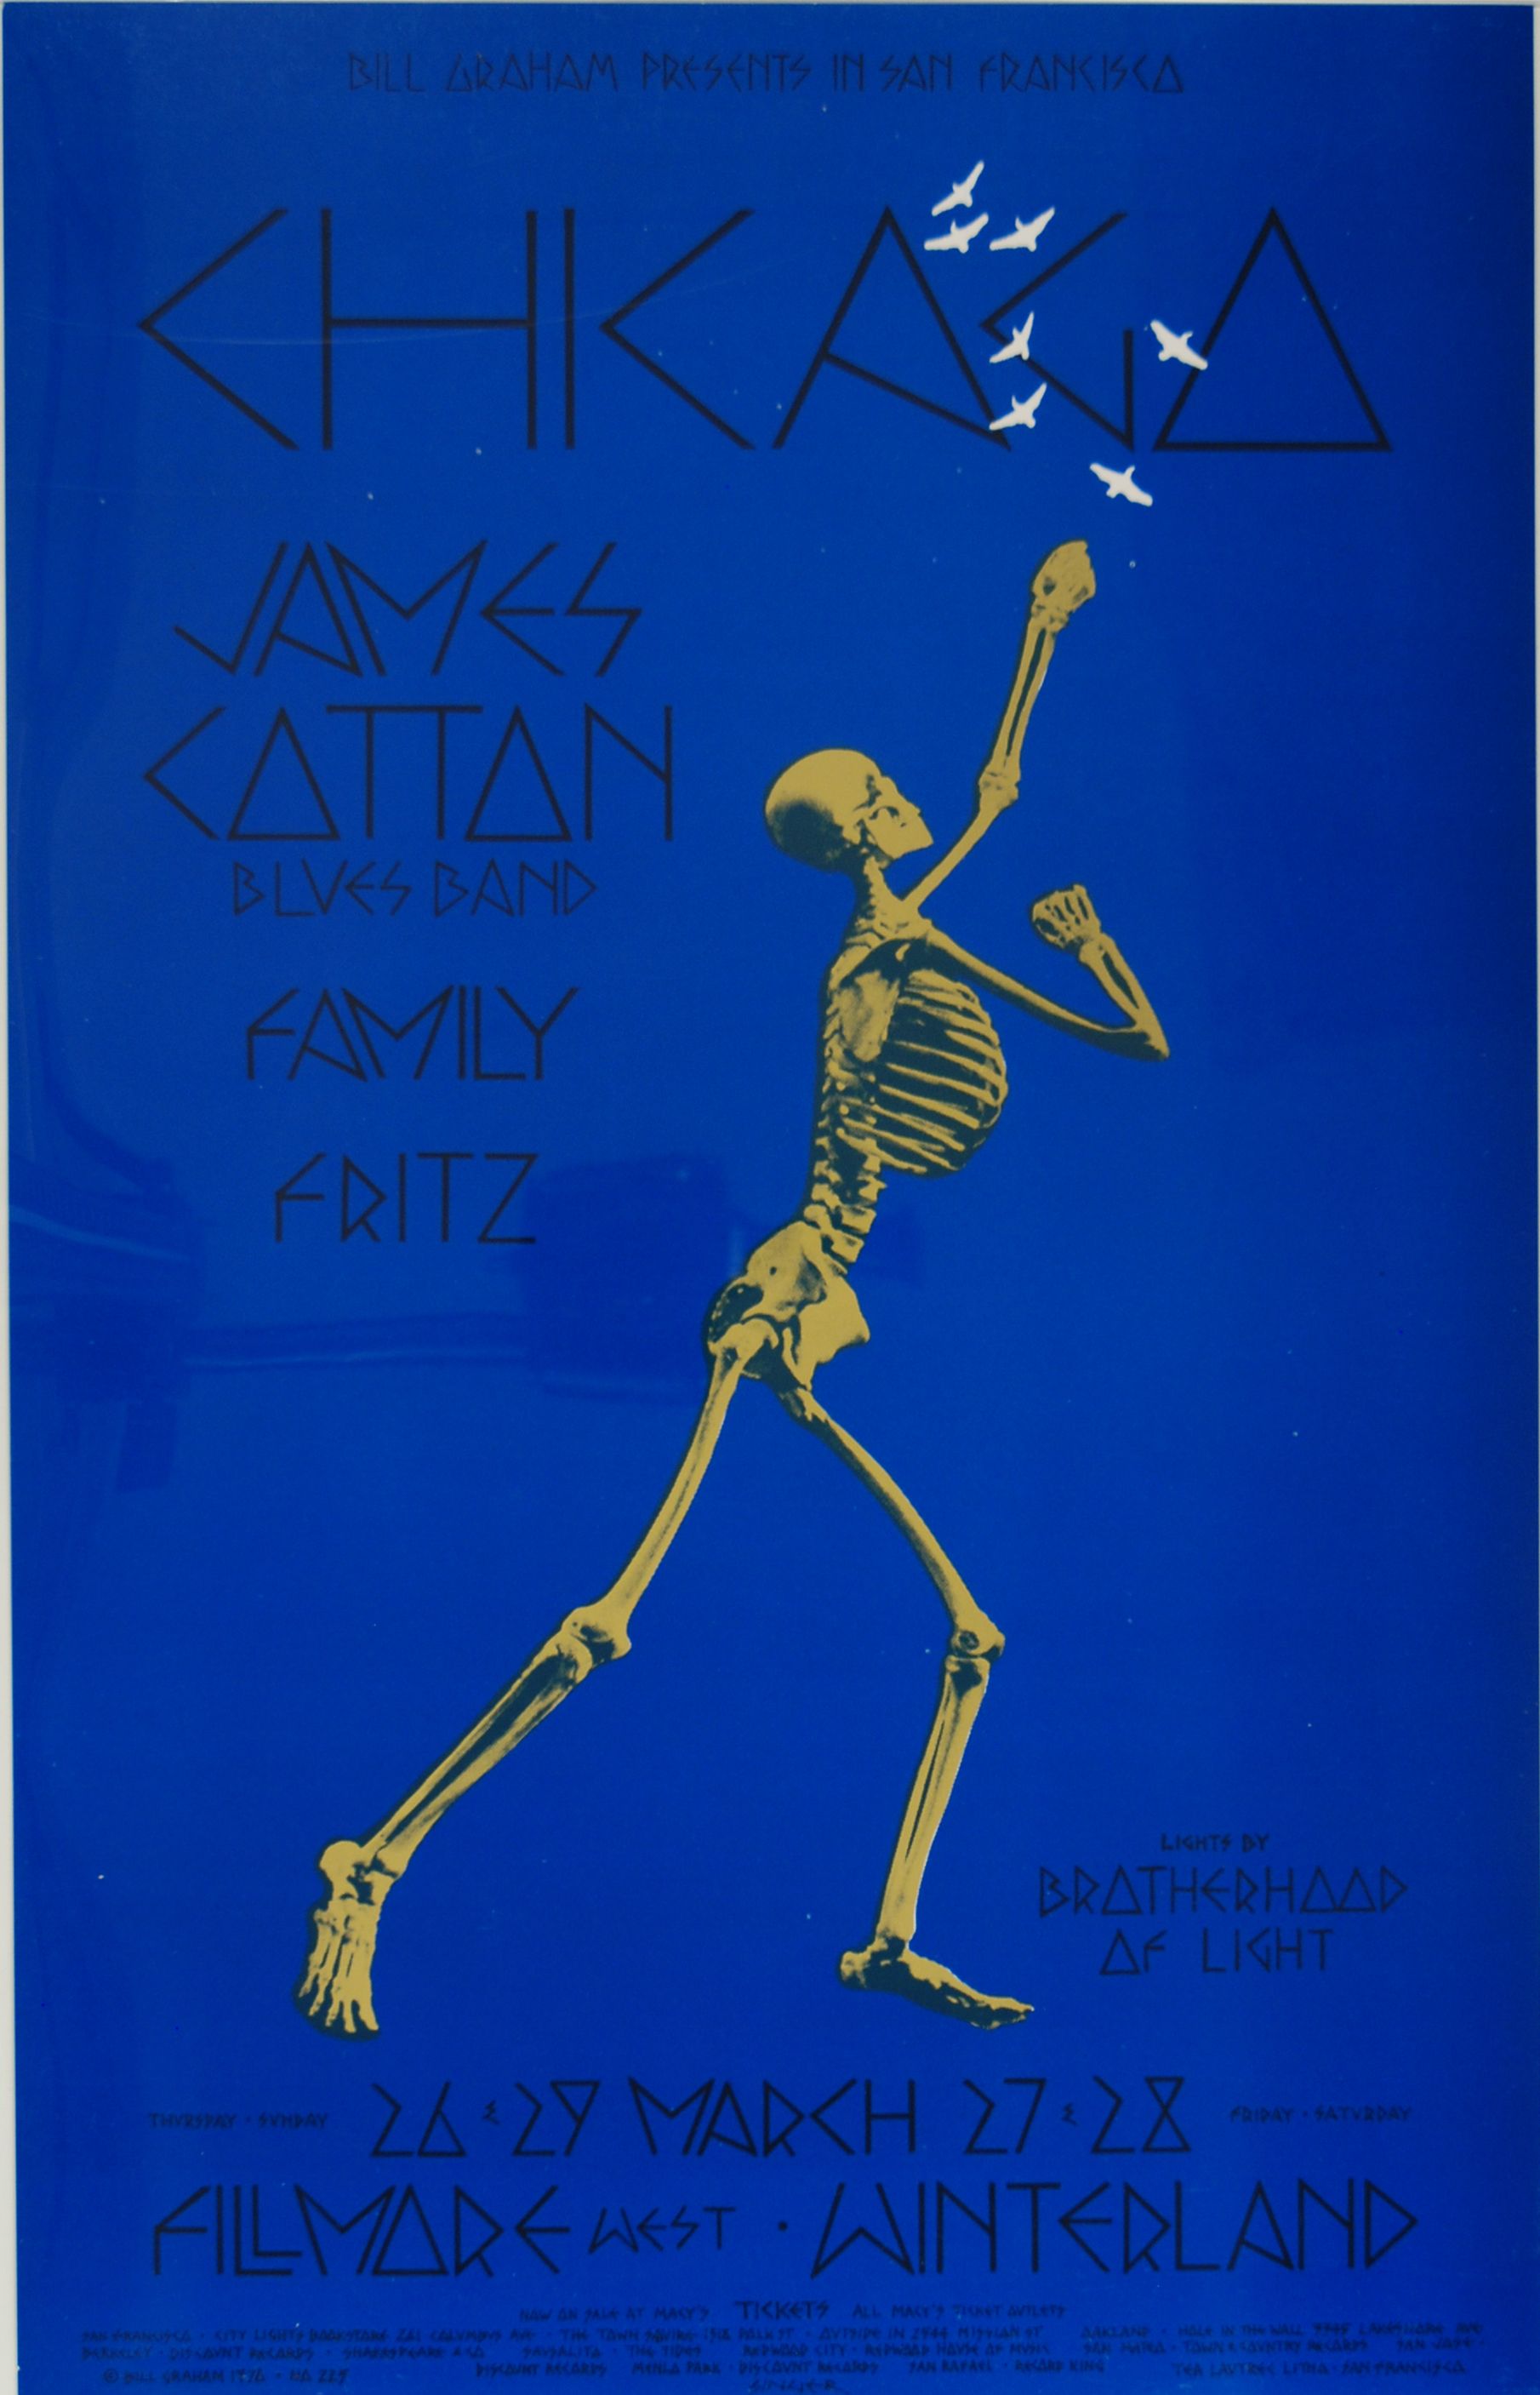 BG-225-OP-1 Concert Poster